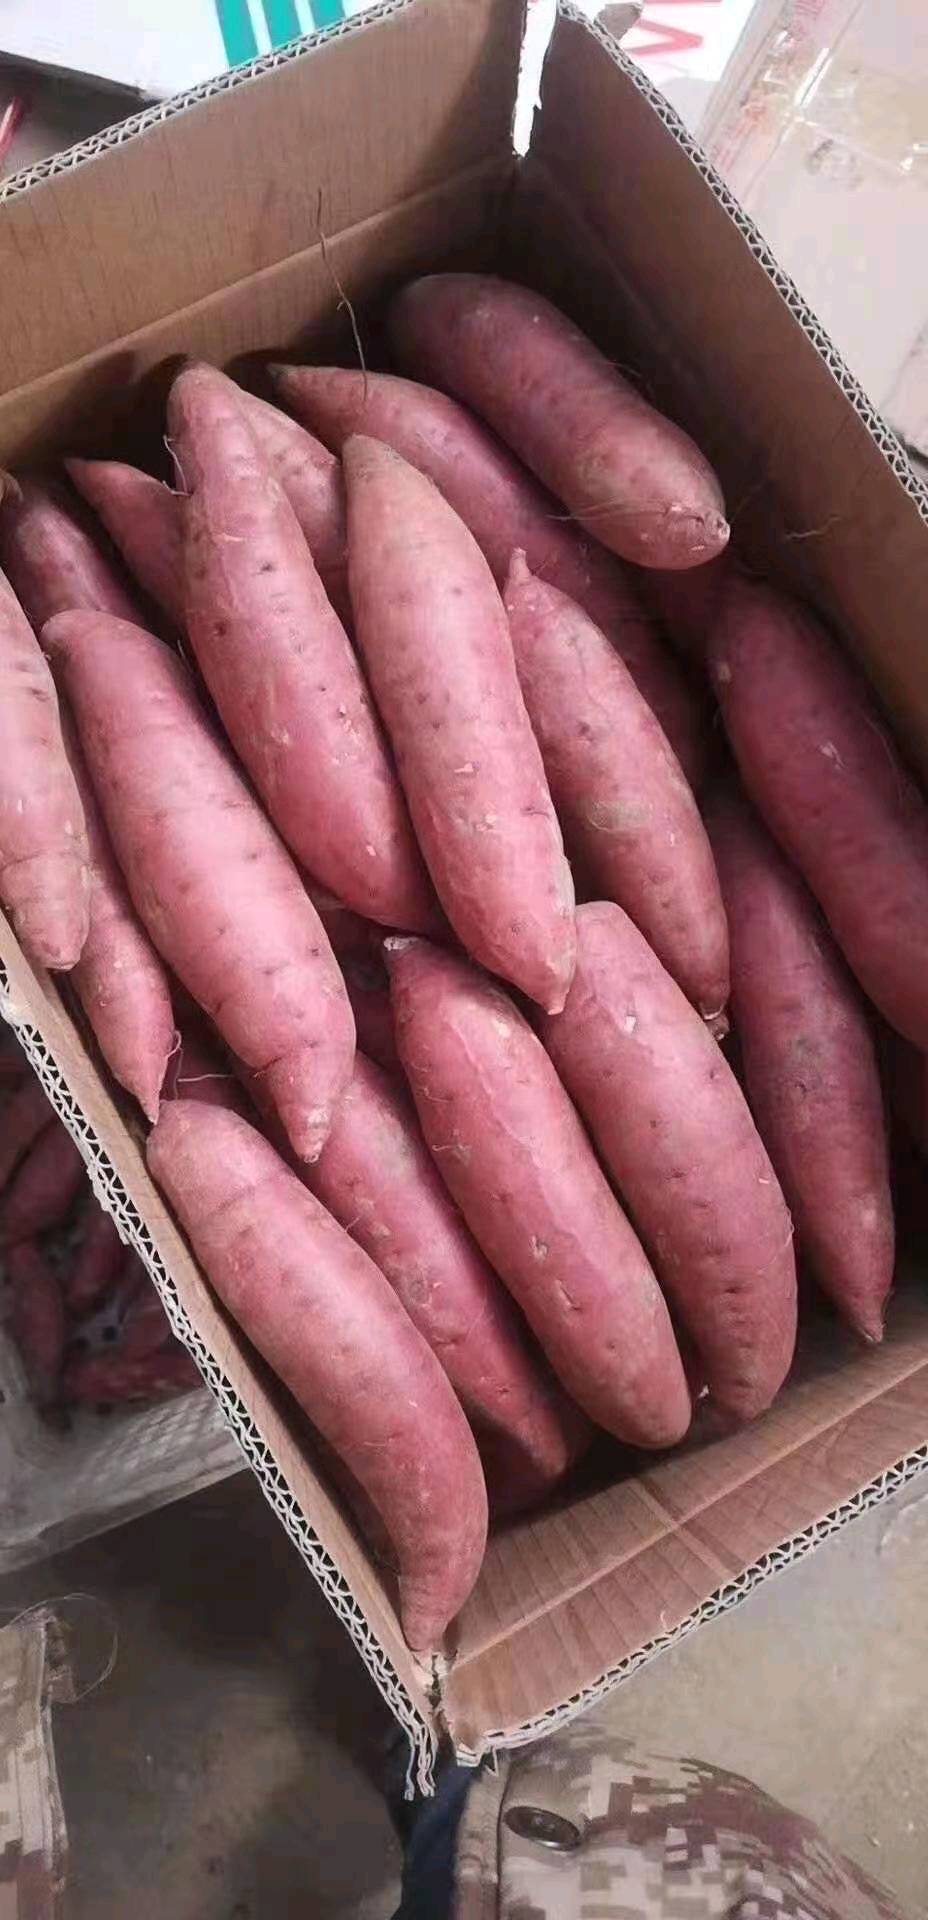 15265199952大量供应西瓜红红薯常年供应中货源充足质量一流价格便宜支持全国发货15265199952